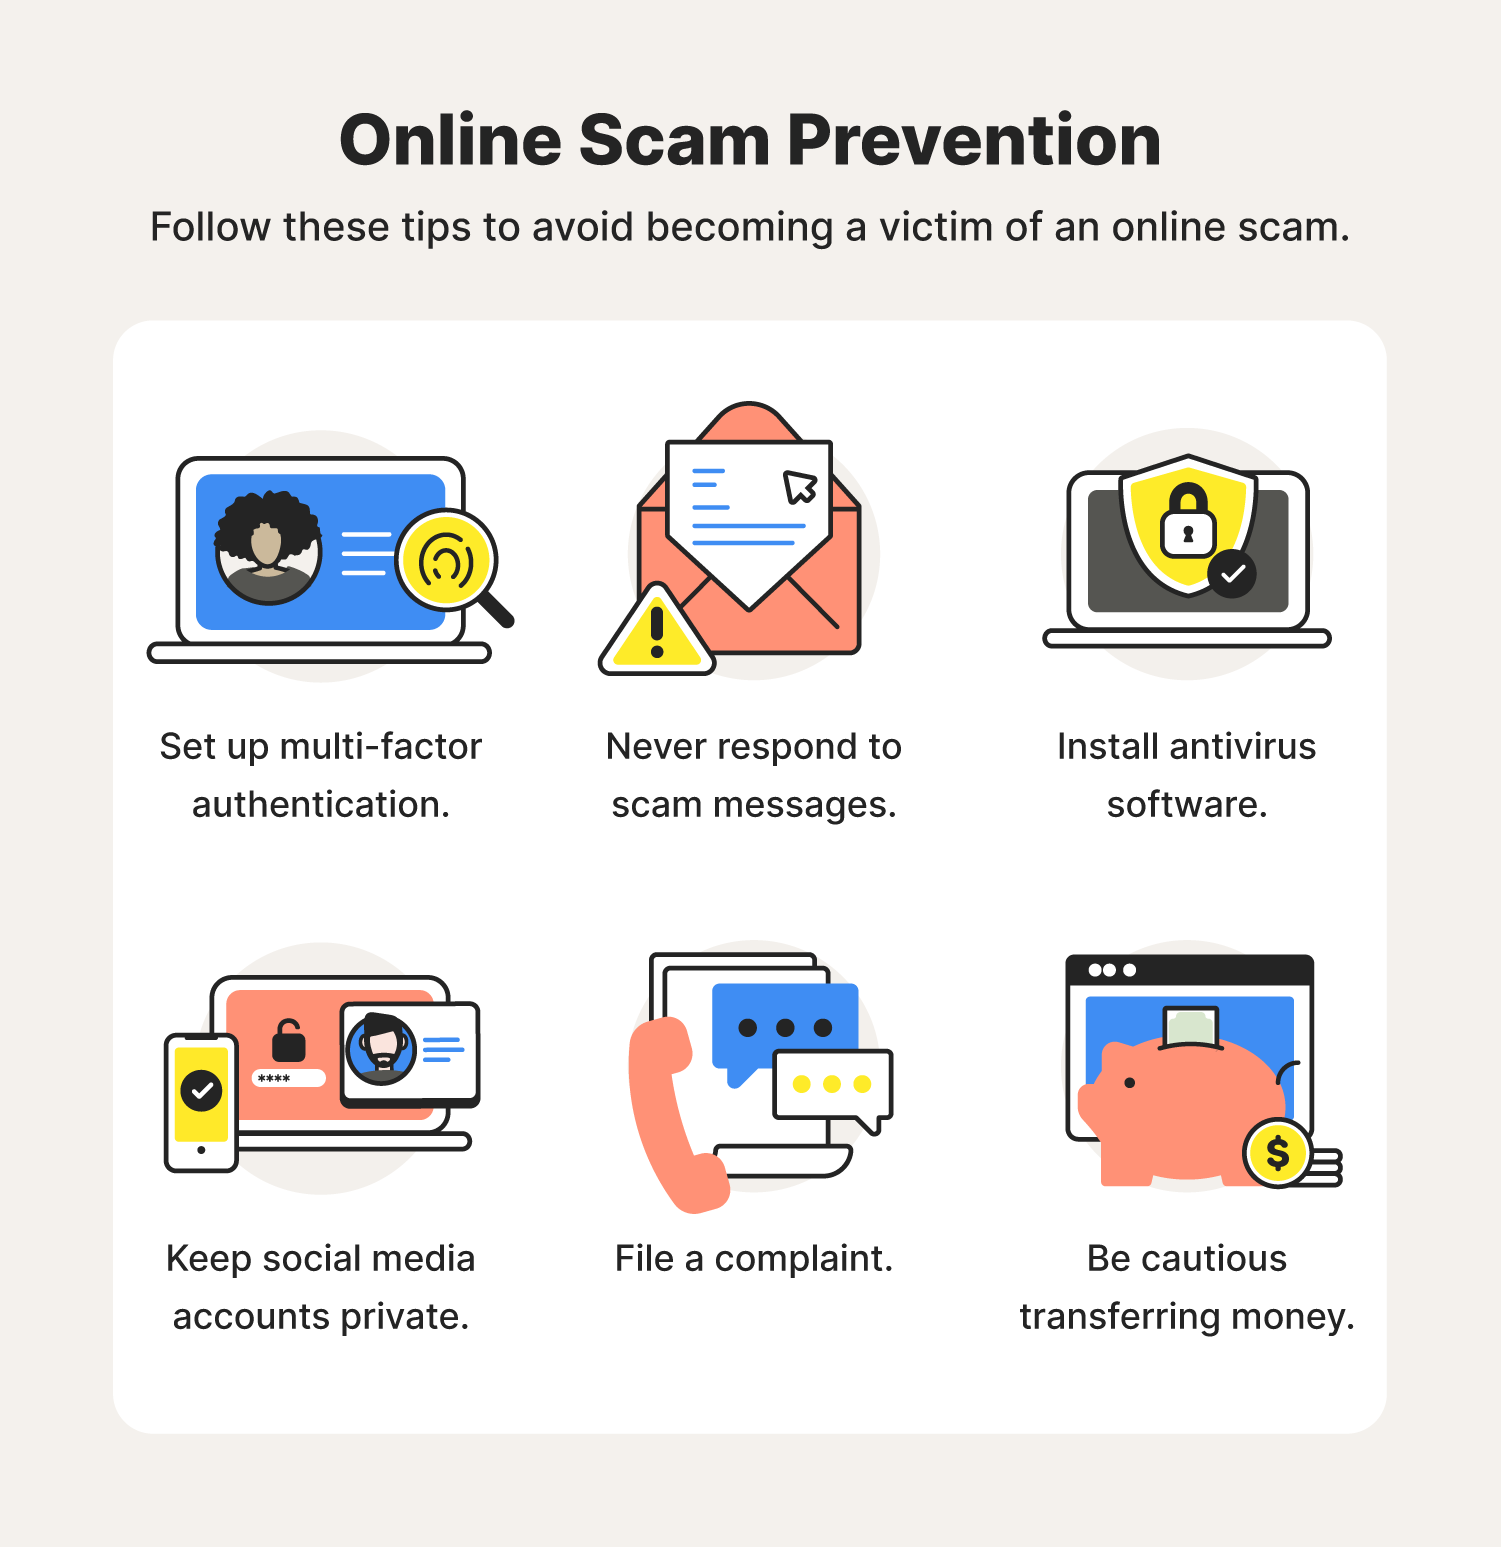 Online scam tips